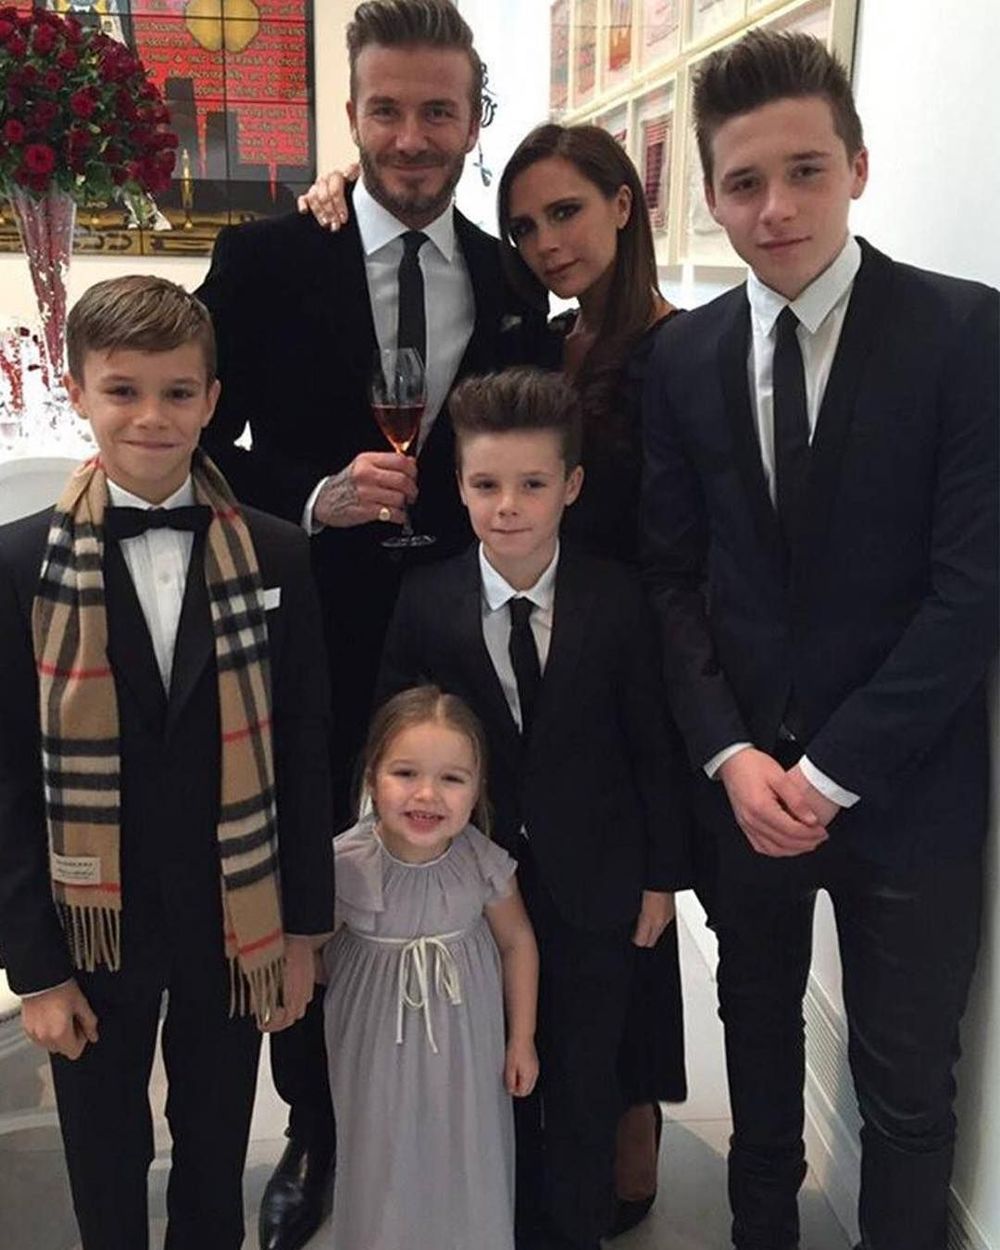  
Nhà Beckham đang rất hào hứng trước cuộc hôn nhân này. (Ảnh: IGNV)